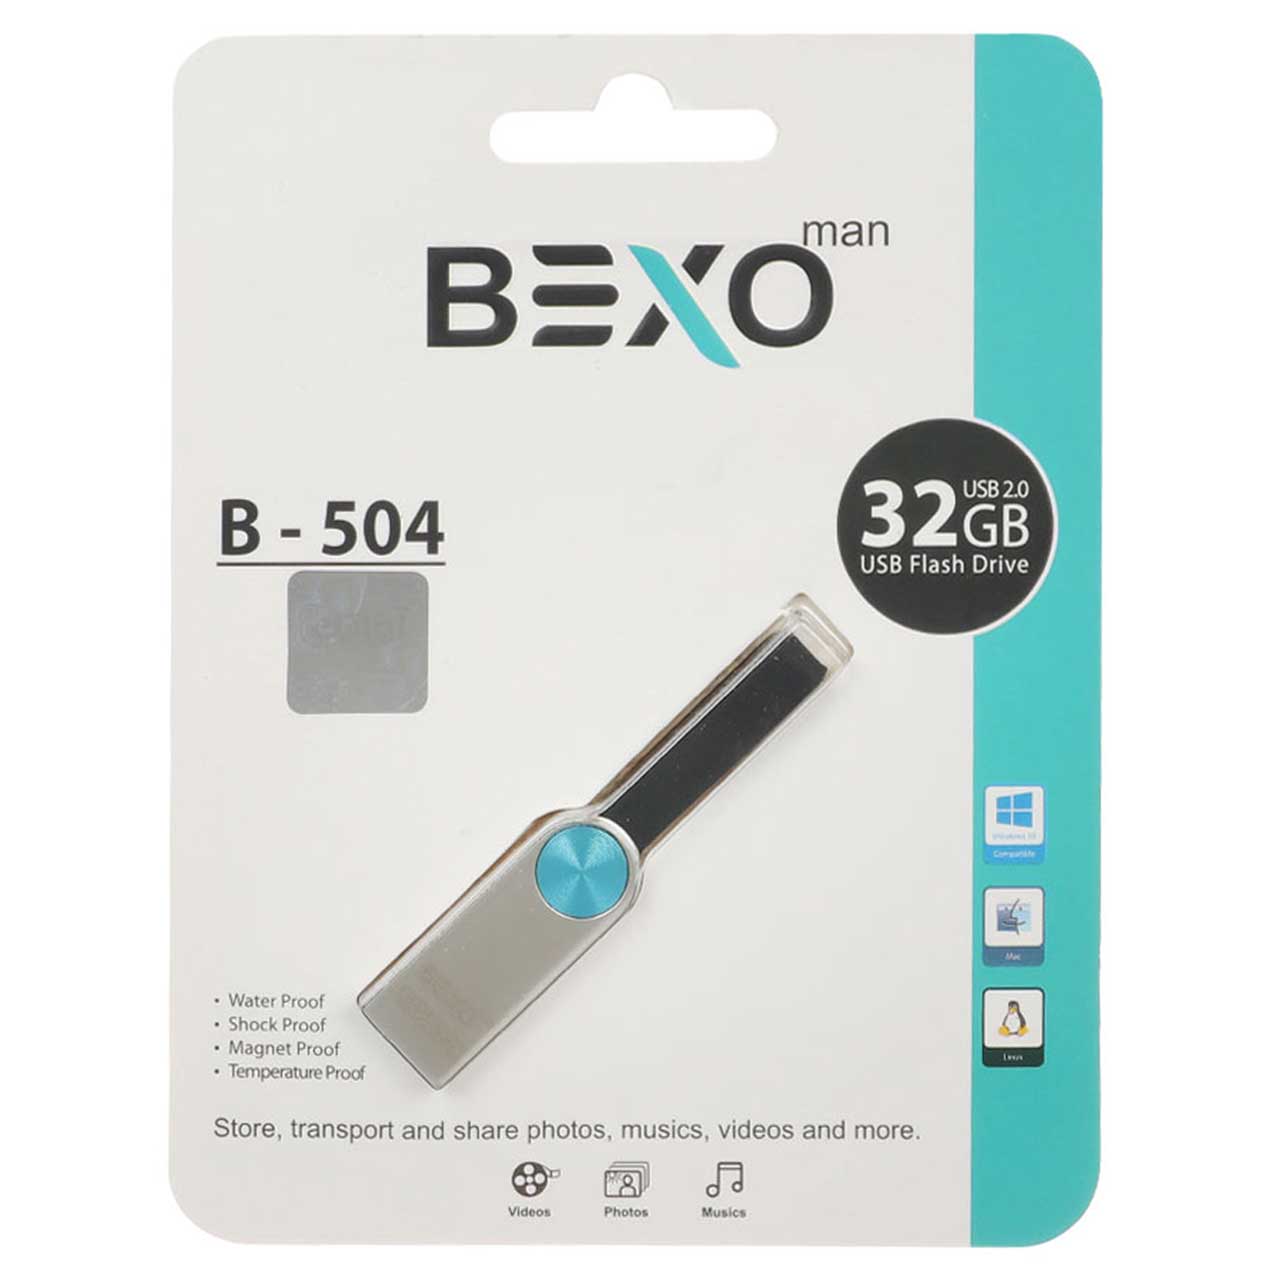 BEXO B-504 USB2.0 Flash Memory - 32GB (گارانتی داده پردازی آواتک) نقره ای